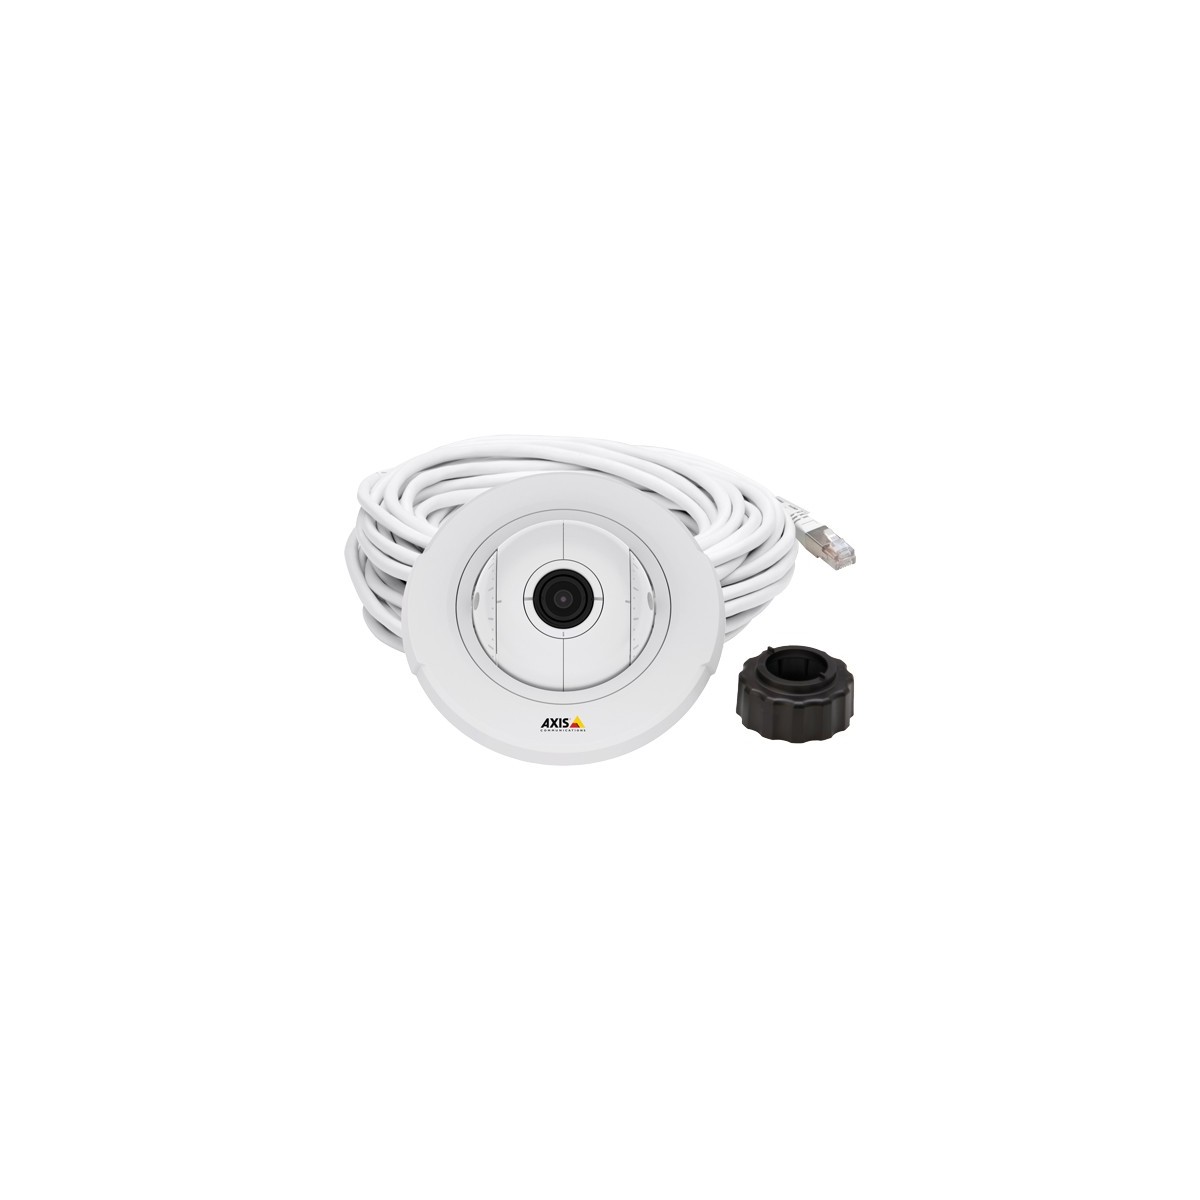 Axis F4005 - Sensor unit - Indoor - White - Plastic - ECE R10 rev.04 - EN 50121-4 - IEC/EN/UL 60950-1 - IEC 60068-2-1 - IEC 6006